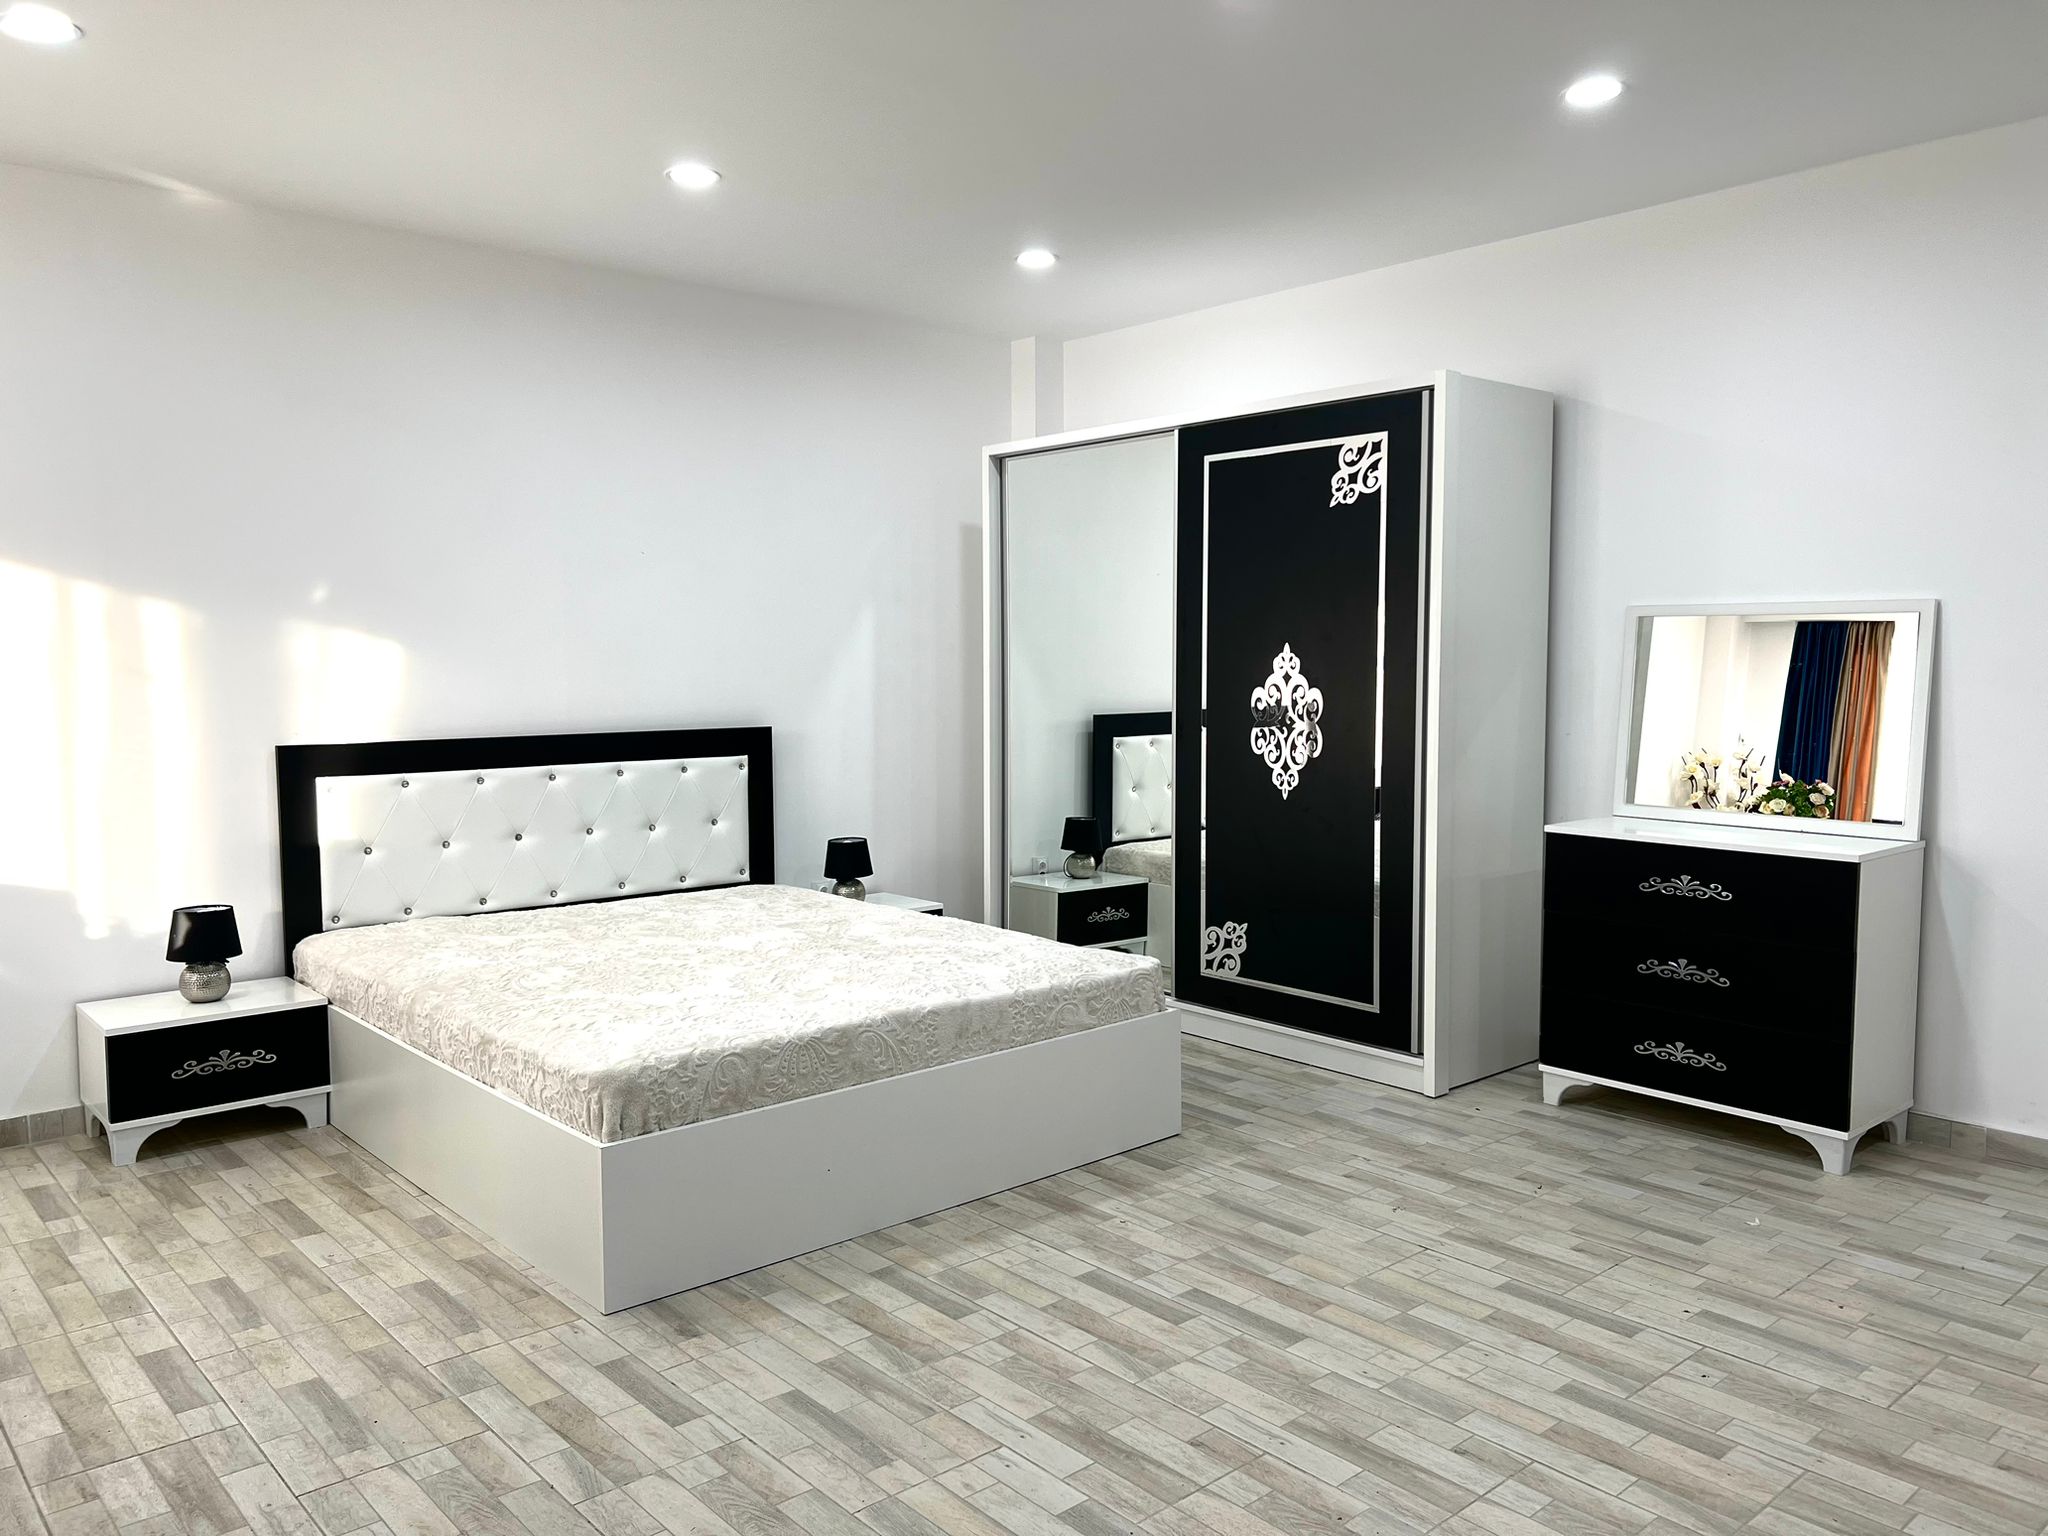 Dormitor Milano, culoare alb / negru, cu pat tapitat 160 x 200 cm, dulap cu 2 usi, comoda cu oglinda, 2 noptiere